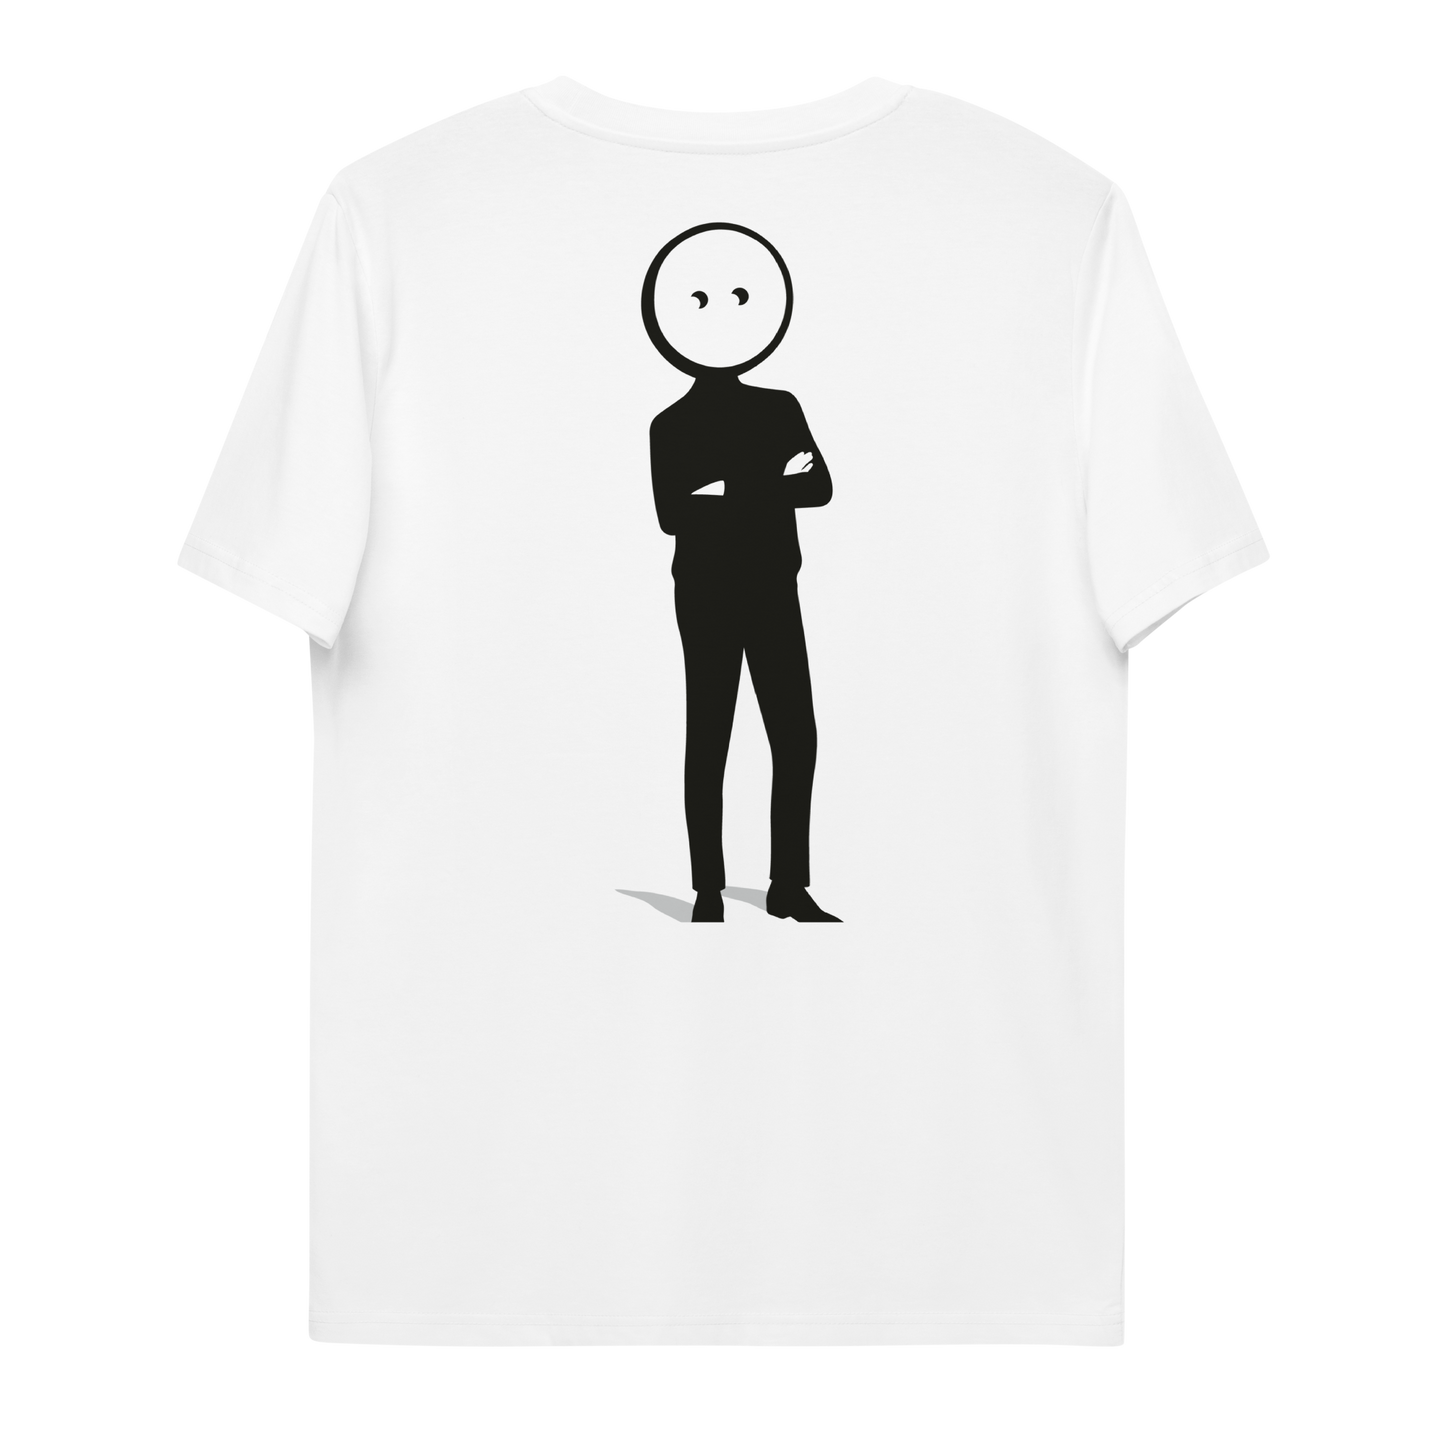 T-shirt - Unisexe - Coton biologique - Brodé